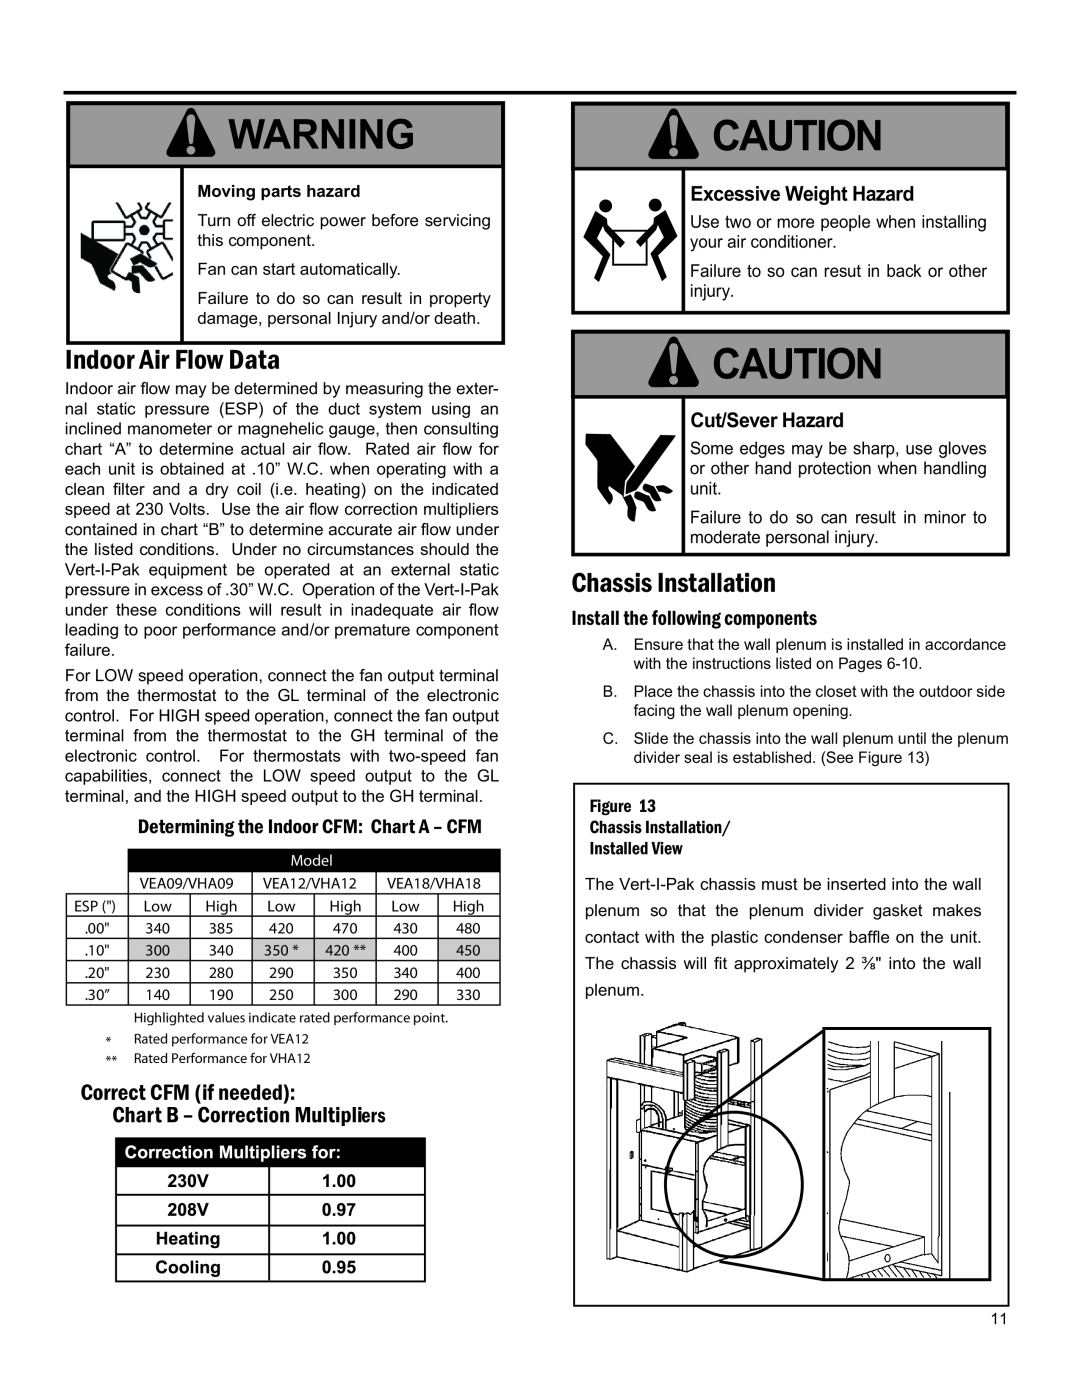 Friedrich 920-075-13 (1-11) Indoor Air Flow Data, Excessive Weight Hazard, Cut/Sever Hazard, Chassis Installation, Injury 